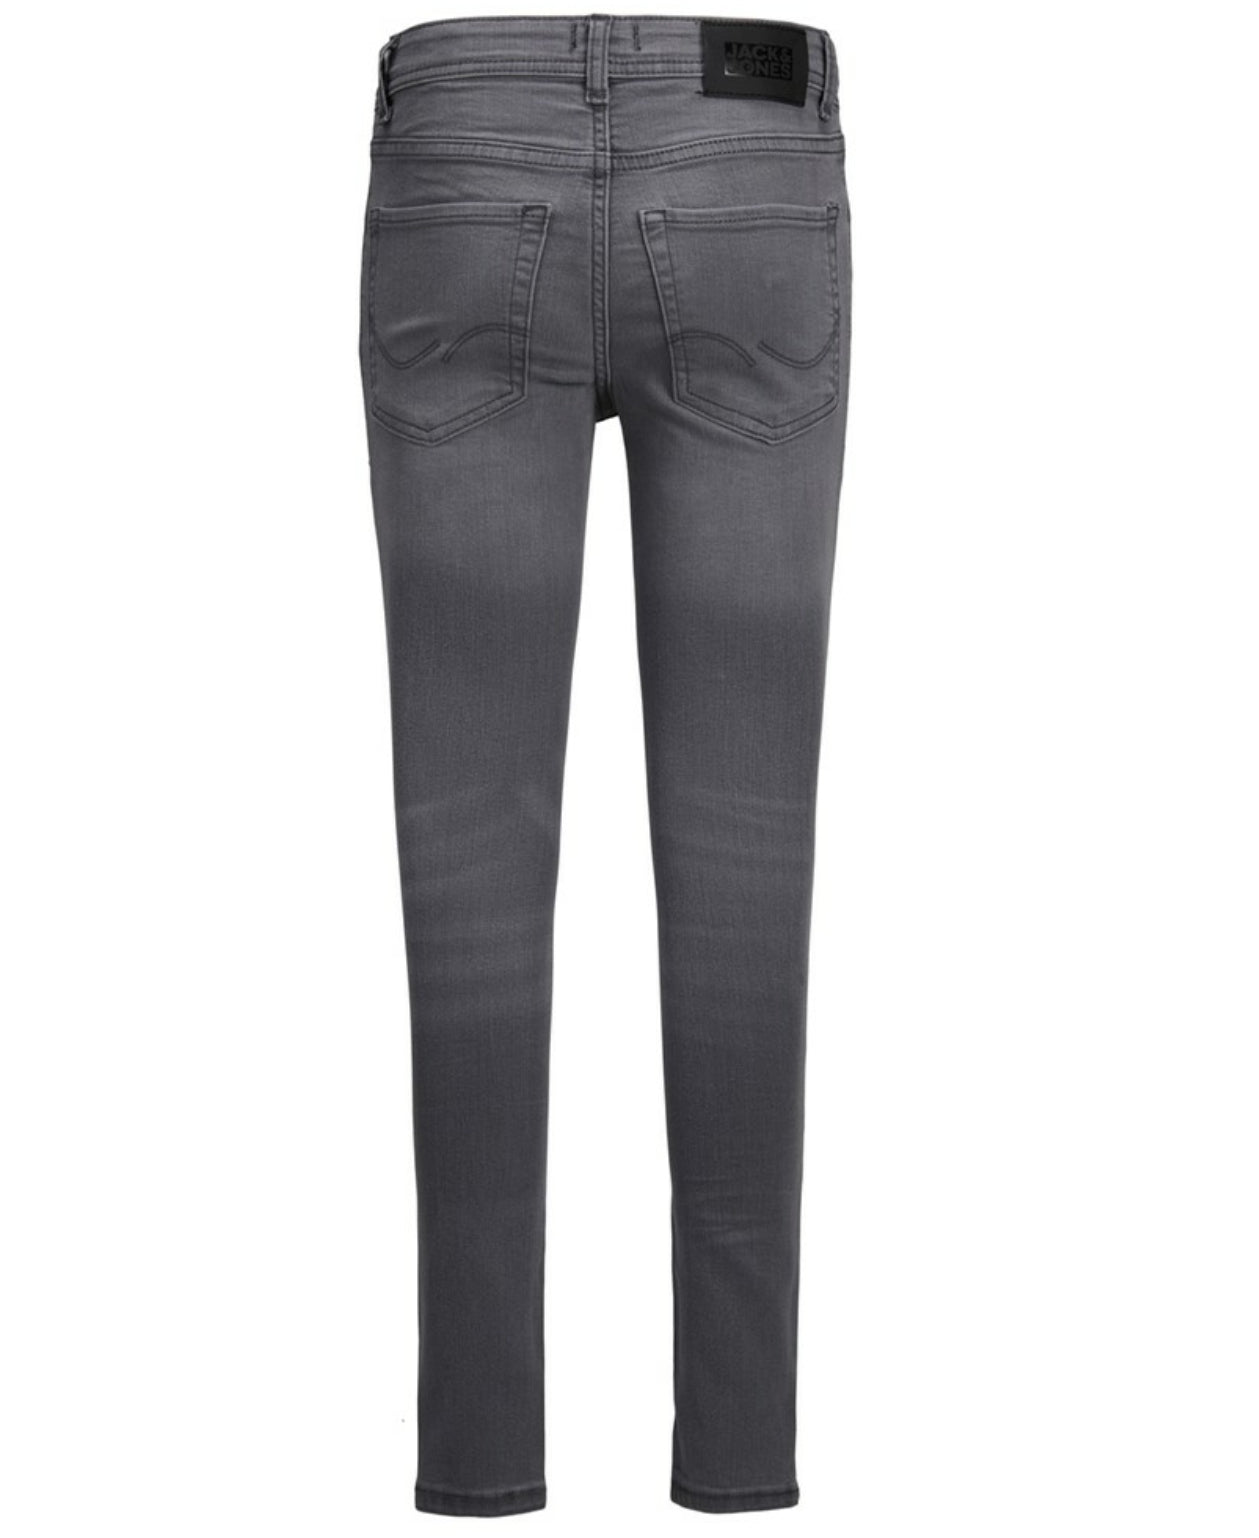 Original Grey denim jeans - Dan